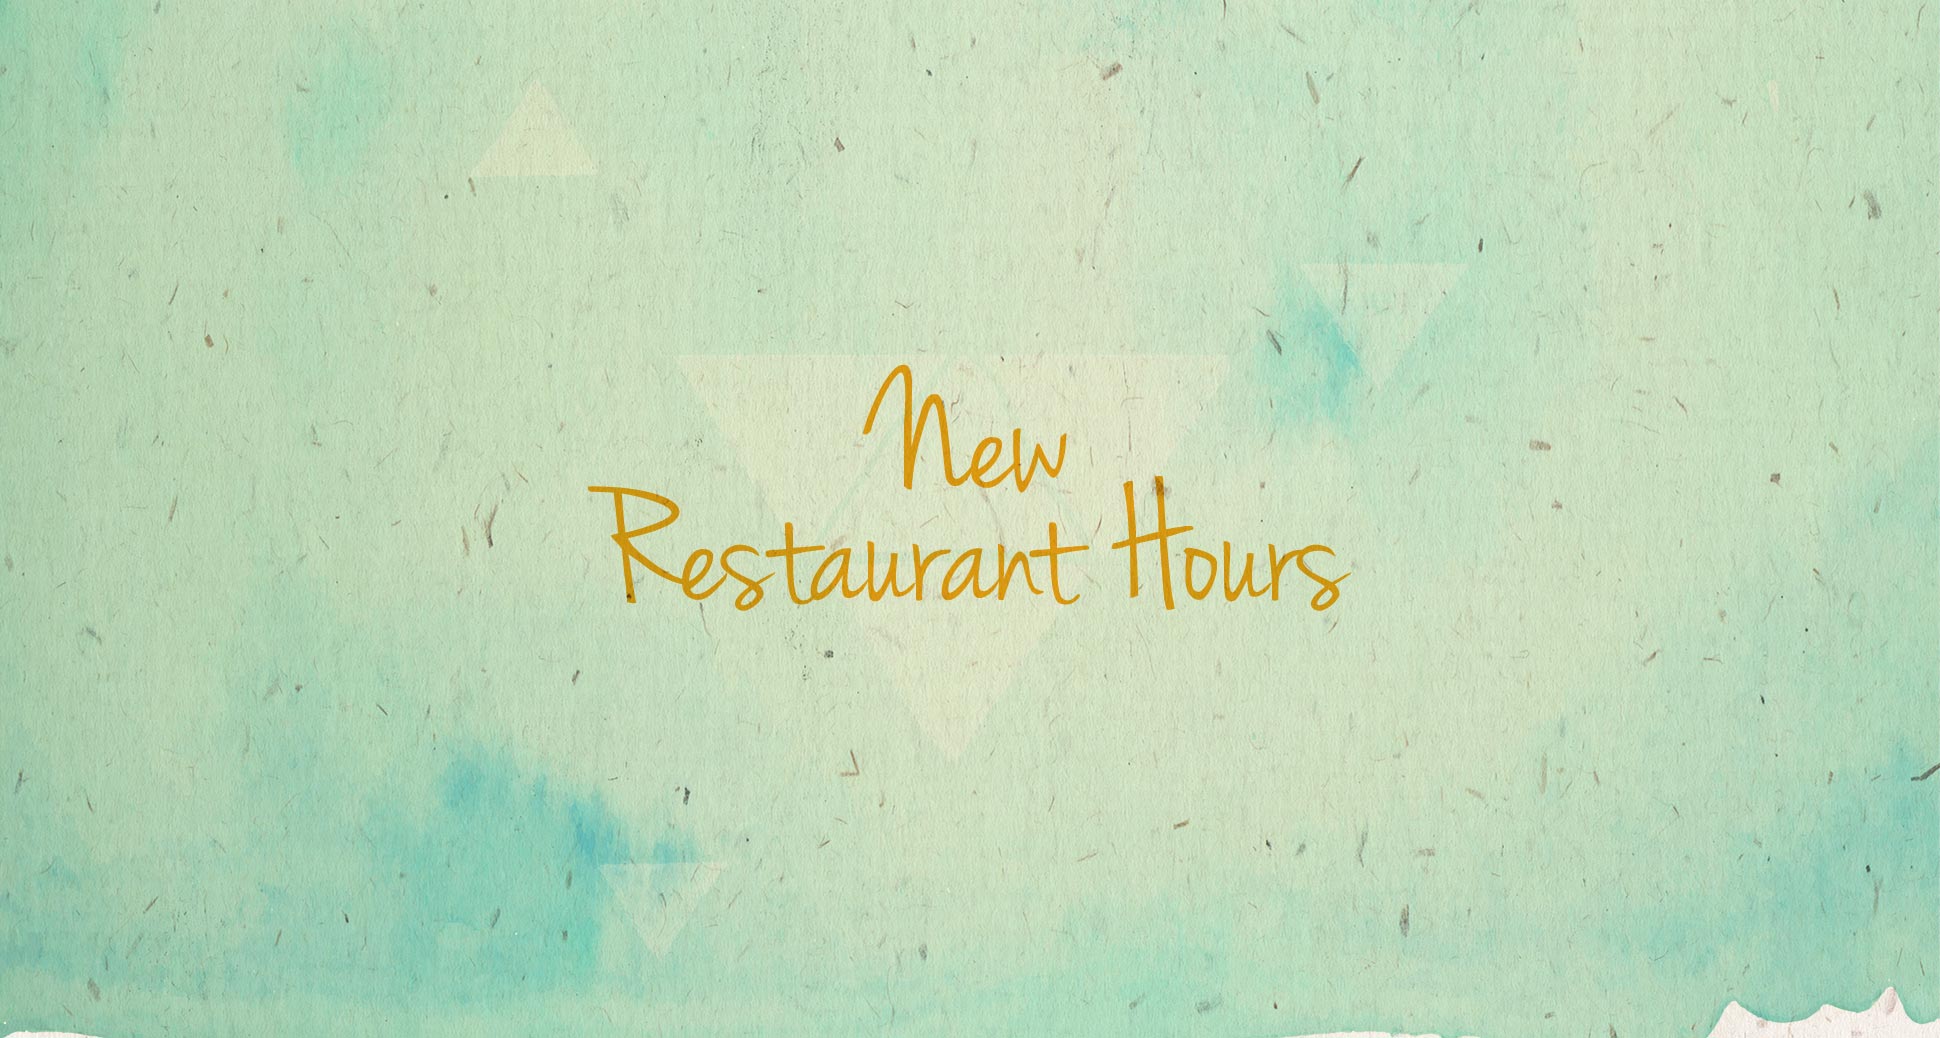 New restaurant hours!